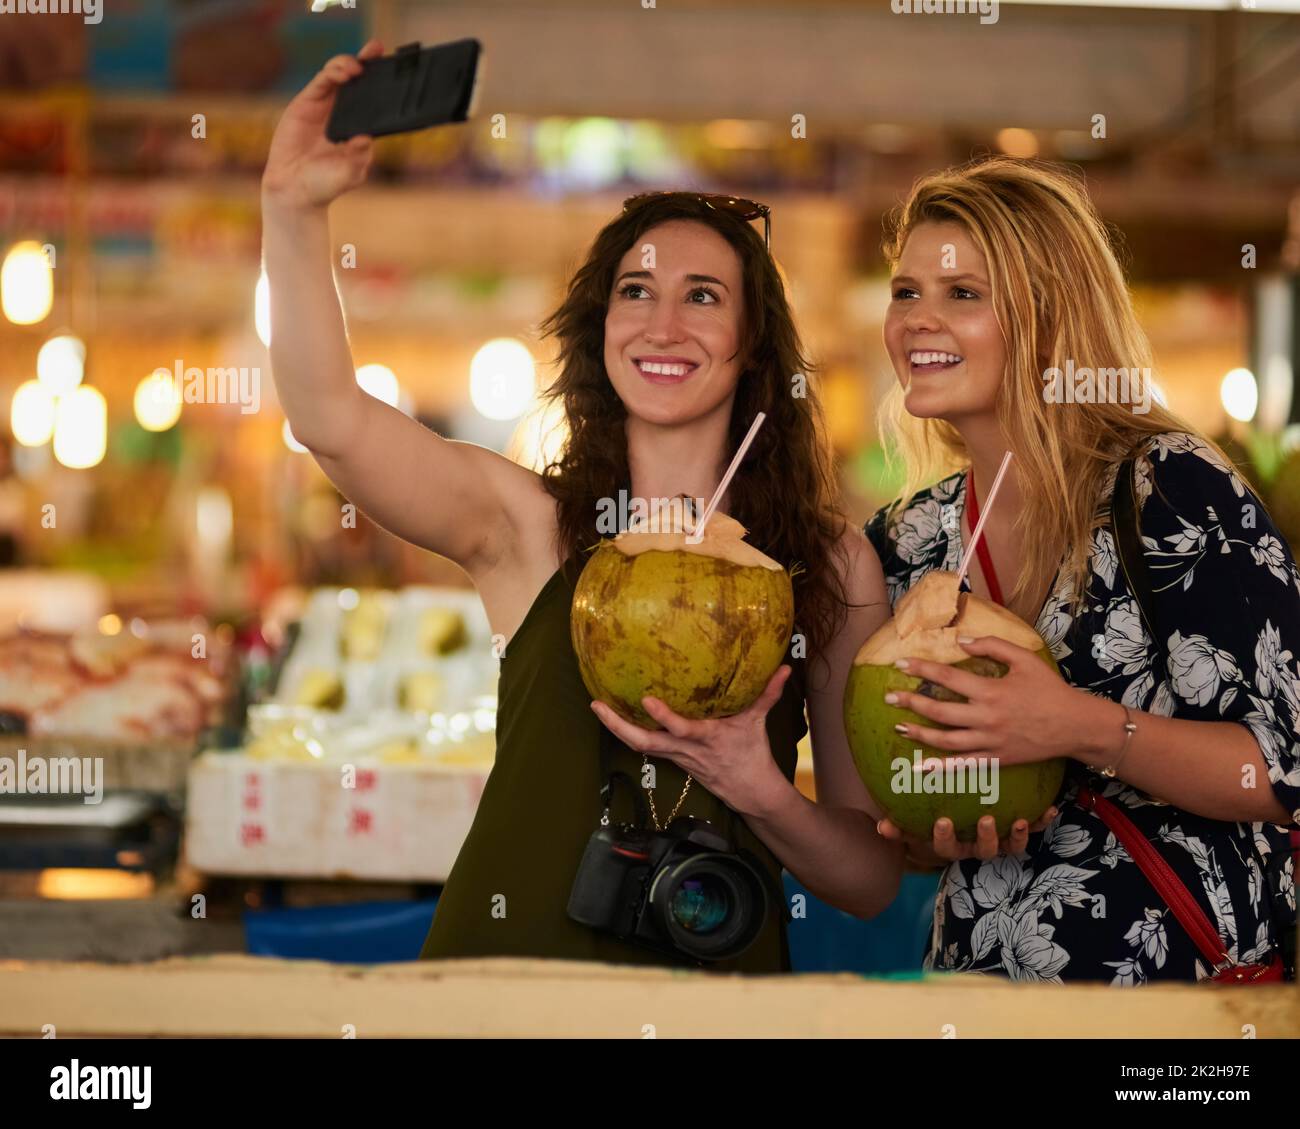 Je vous souhaite d'être ici. Photo de deux jeunes amis heureux prenant un selfie tout en dégustant des boissons exotiques en vacances. Banque D'Images